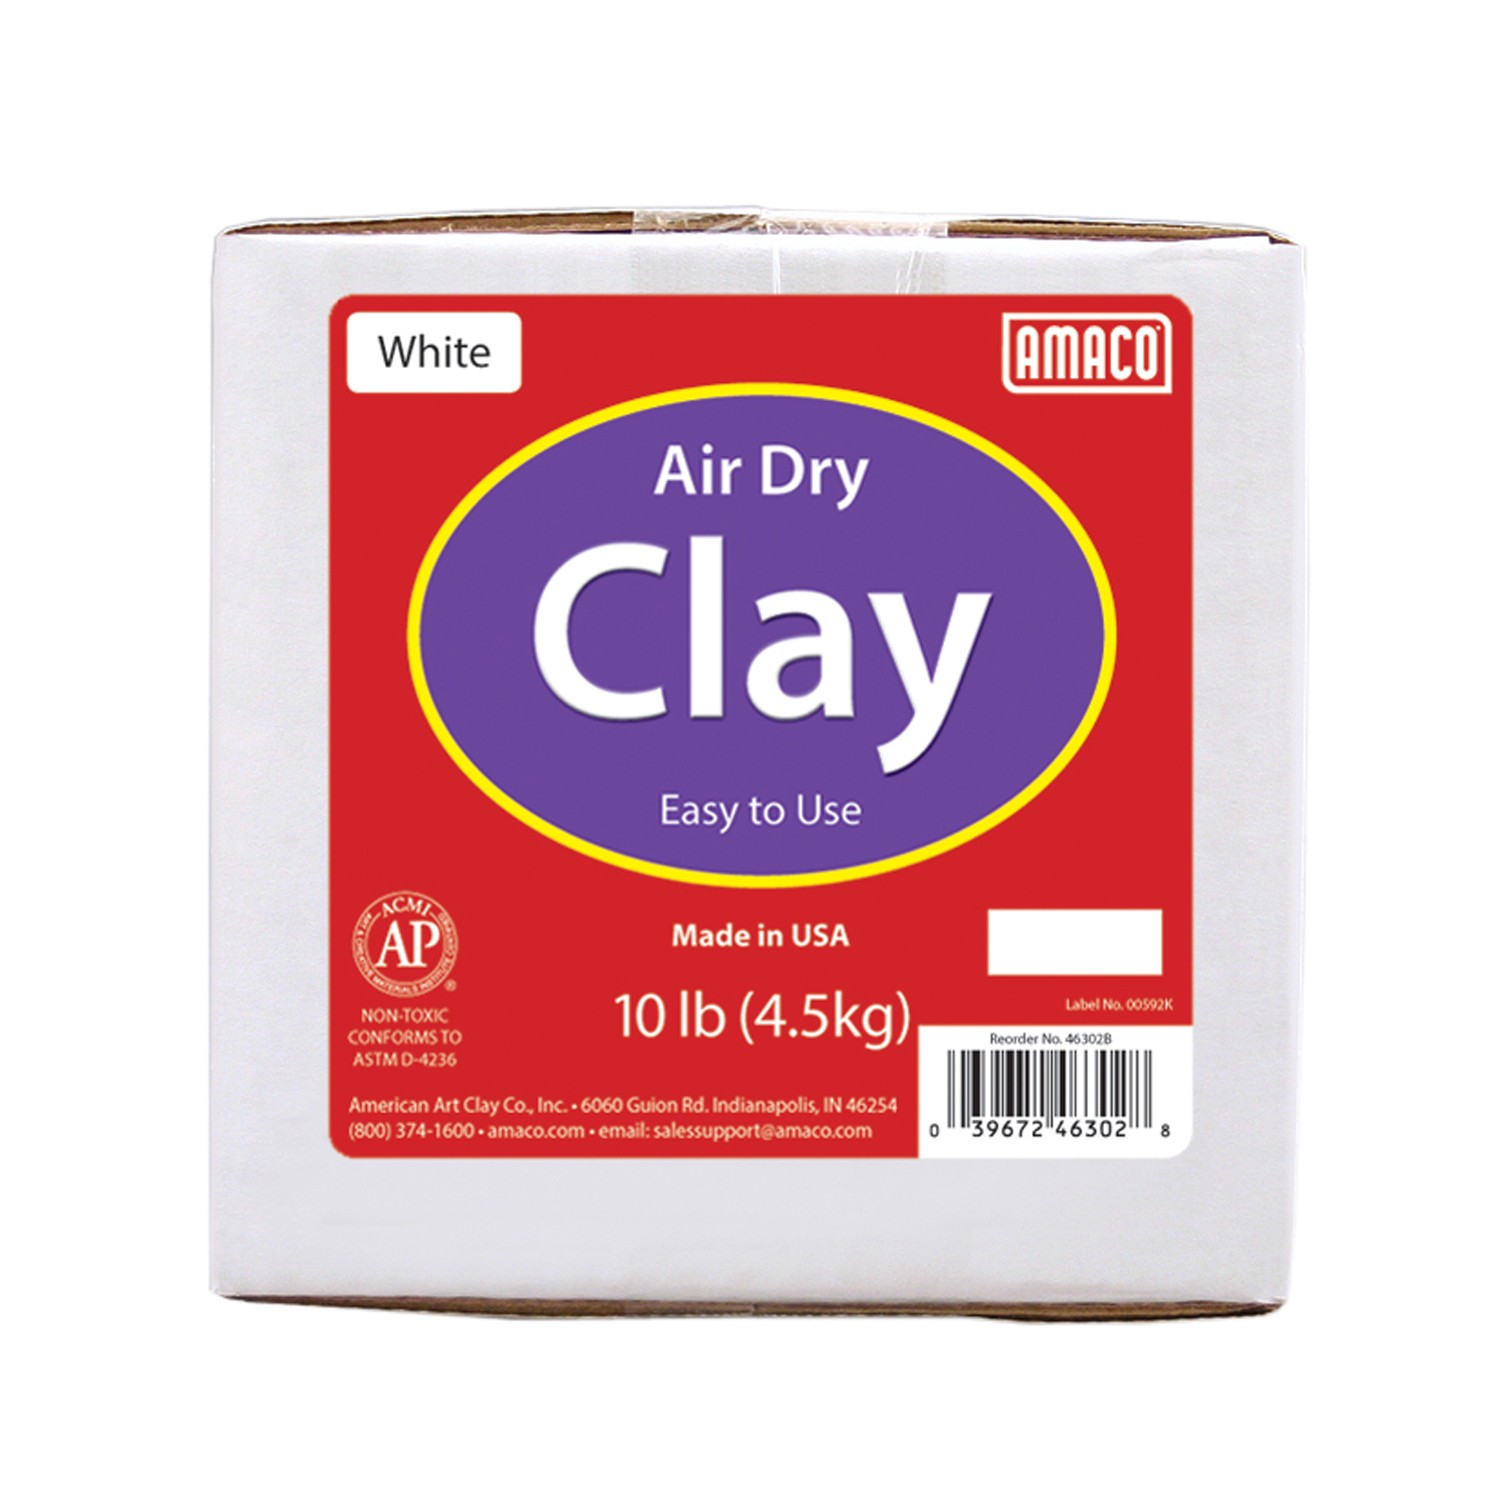 Air Dry Clay, White, 10 lbs